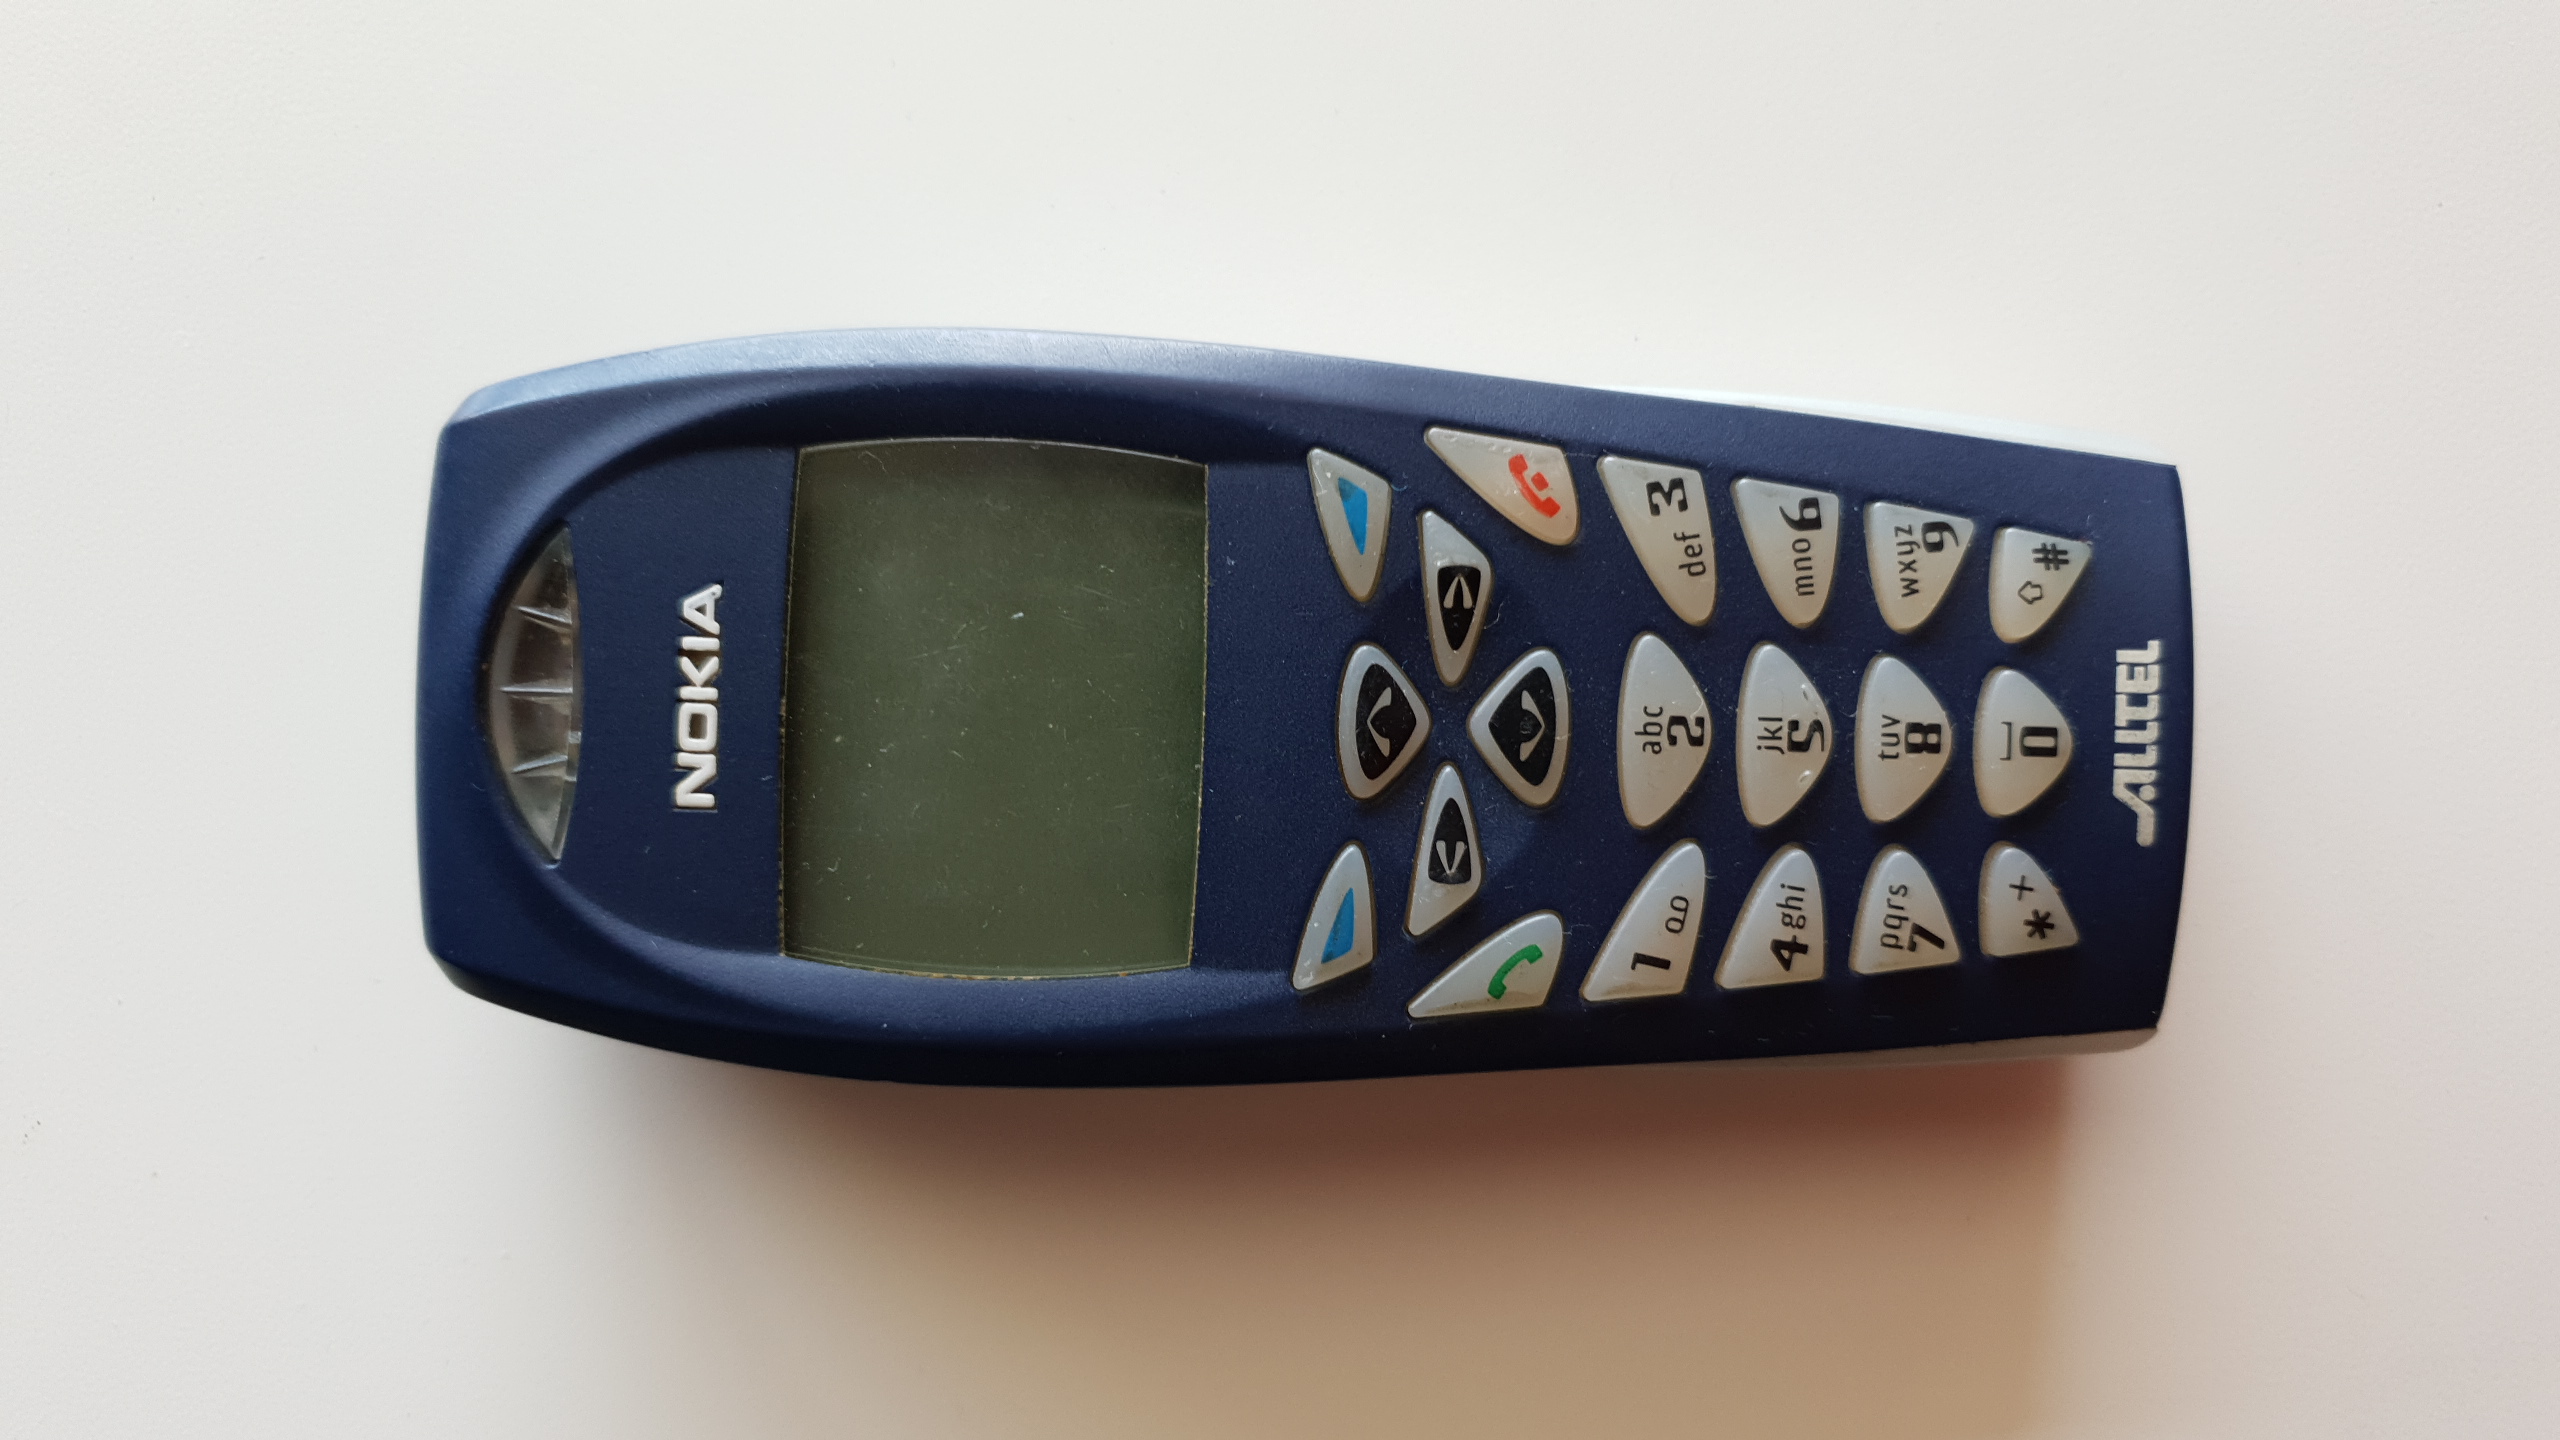 NOKIA » Nokia - 2002